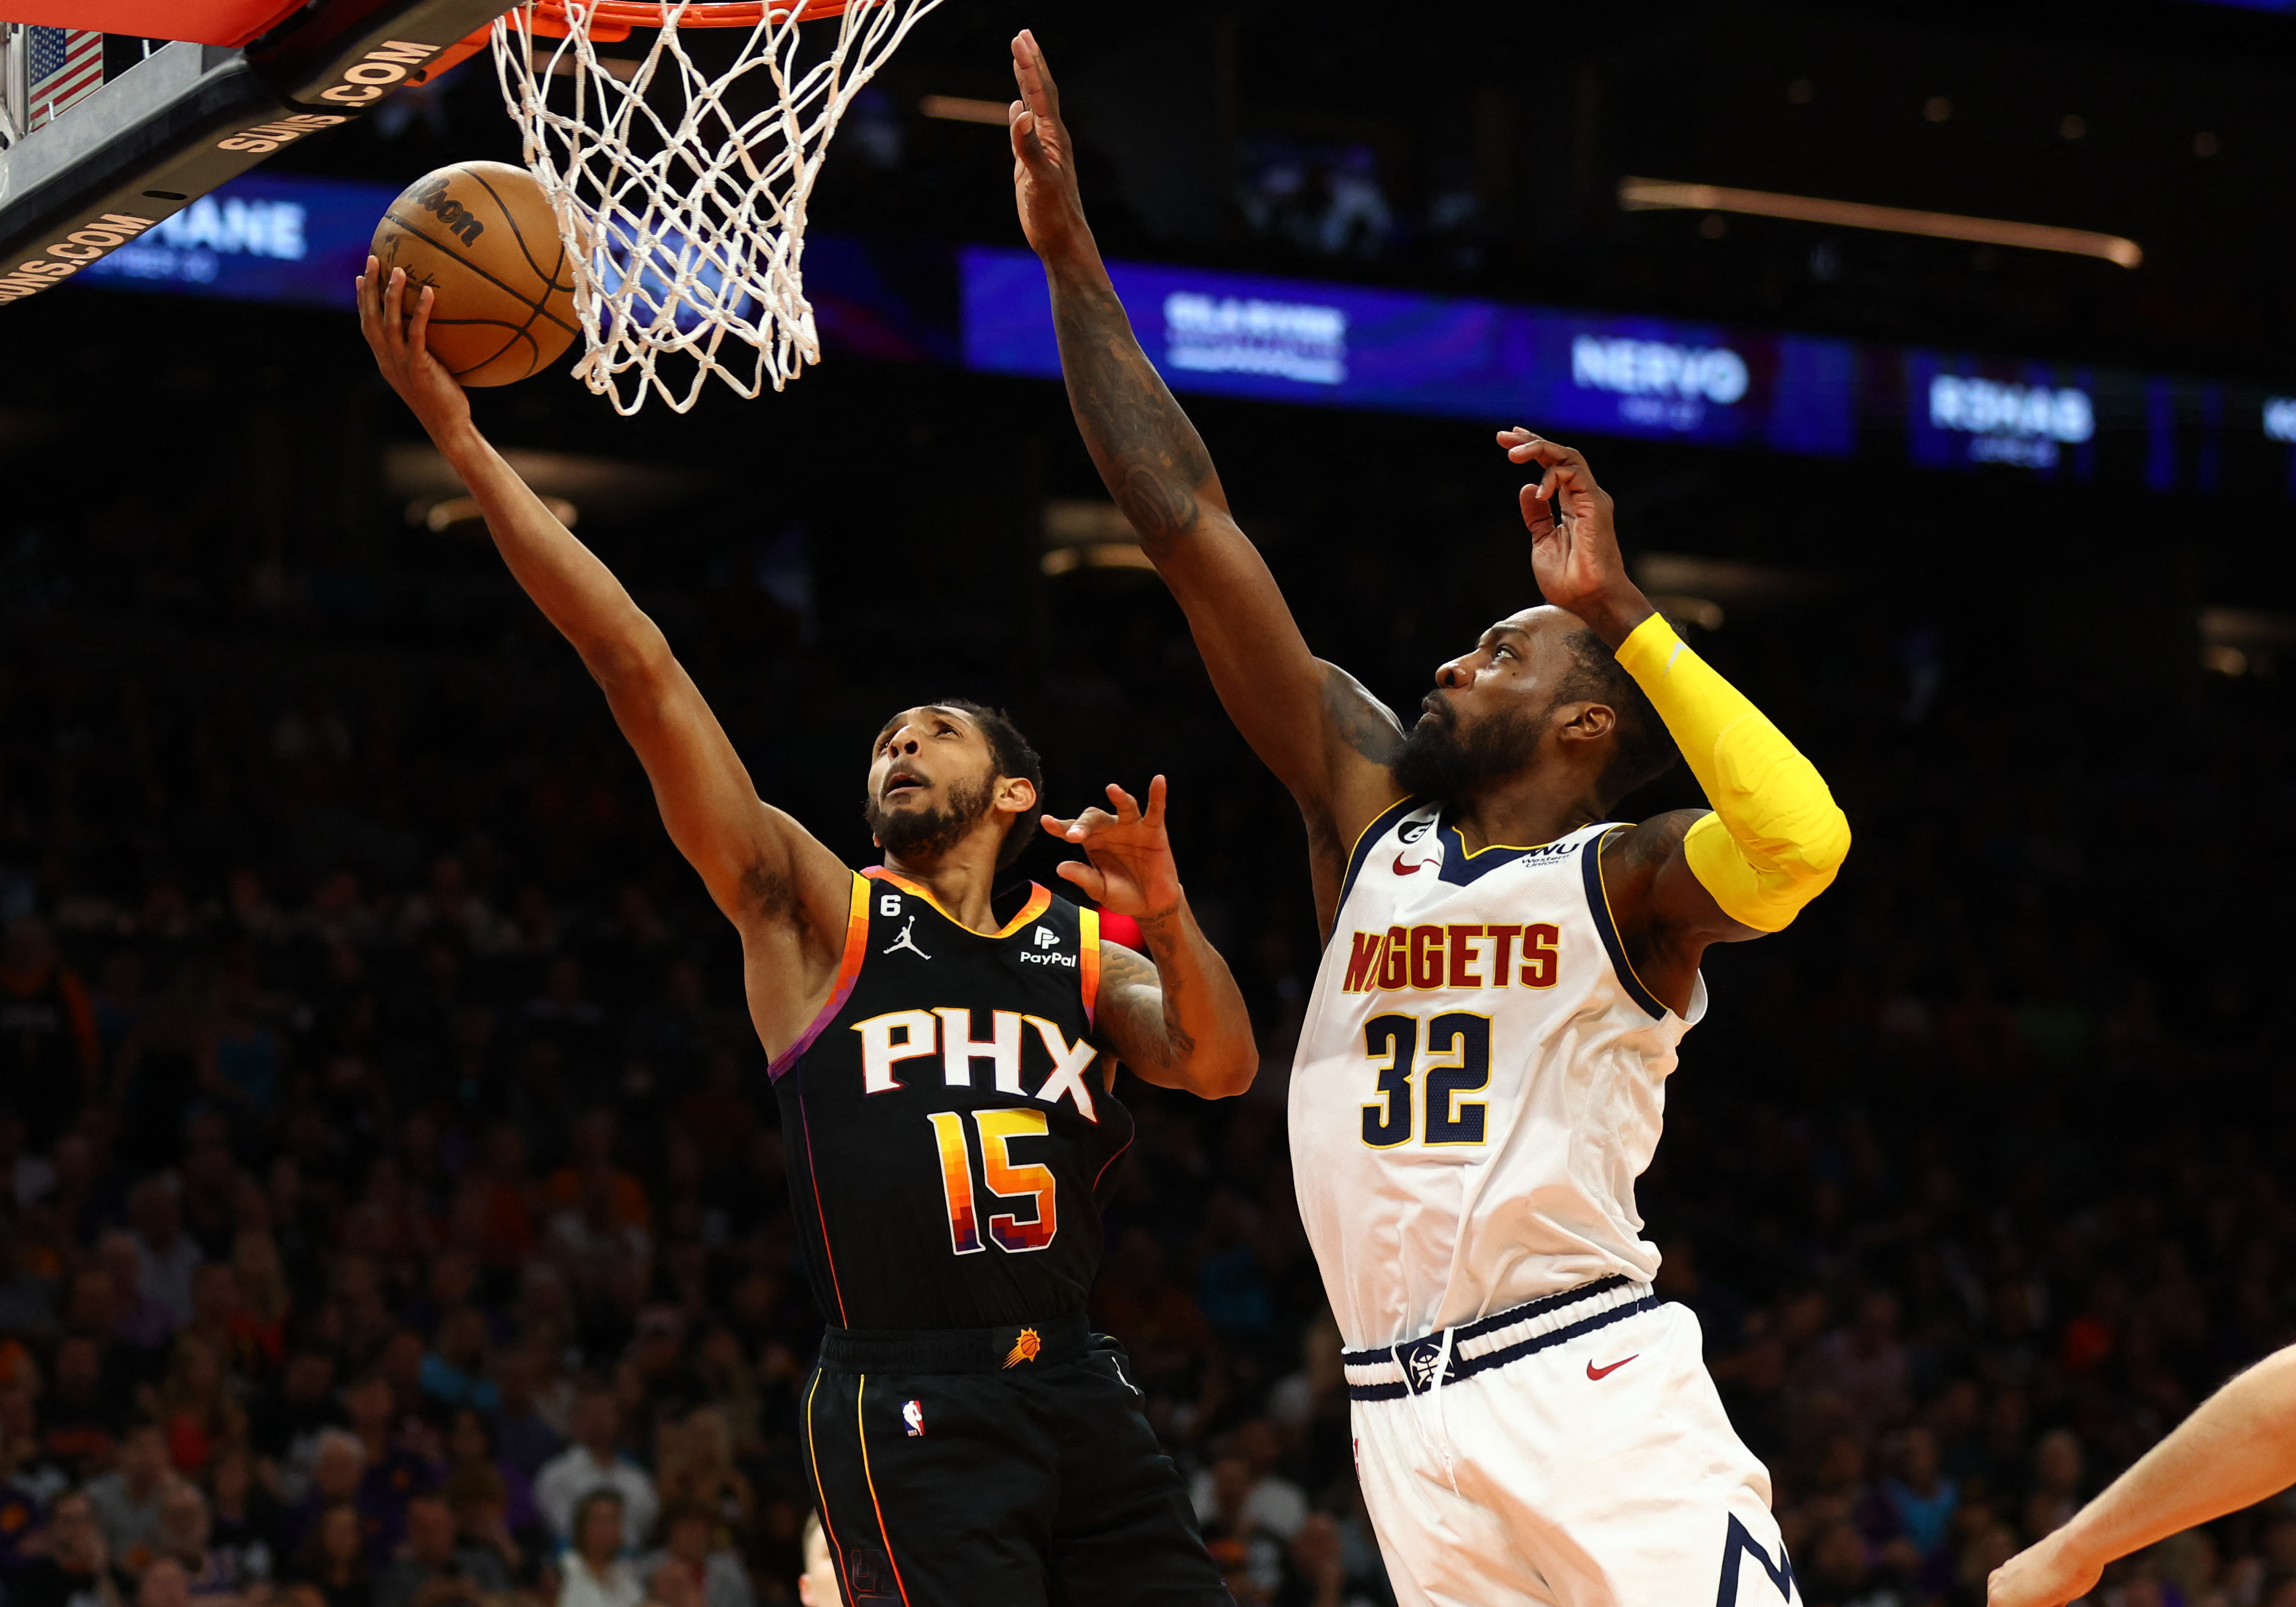 Phoenix Suns on X: 𝐍𝐁𝐀 𝐅𝐈𝐍𝐀𝐋𝐒. 𝐆𝐀𝐌𝐄 𝟓